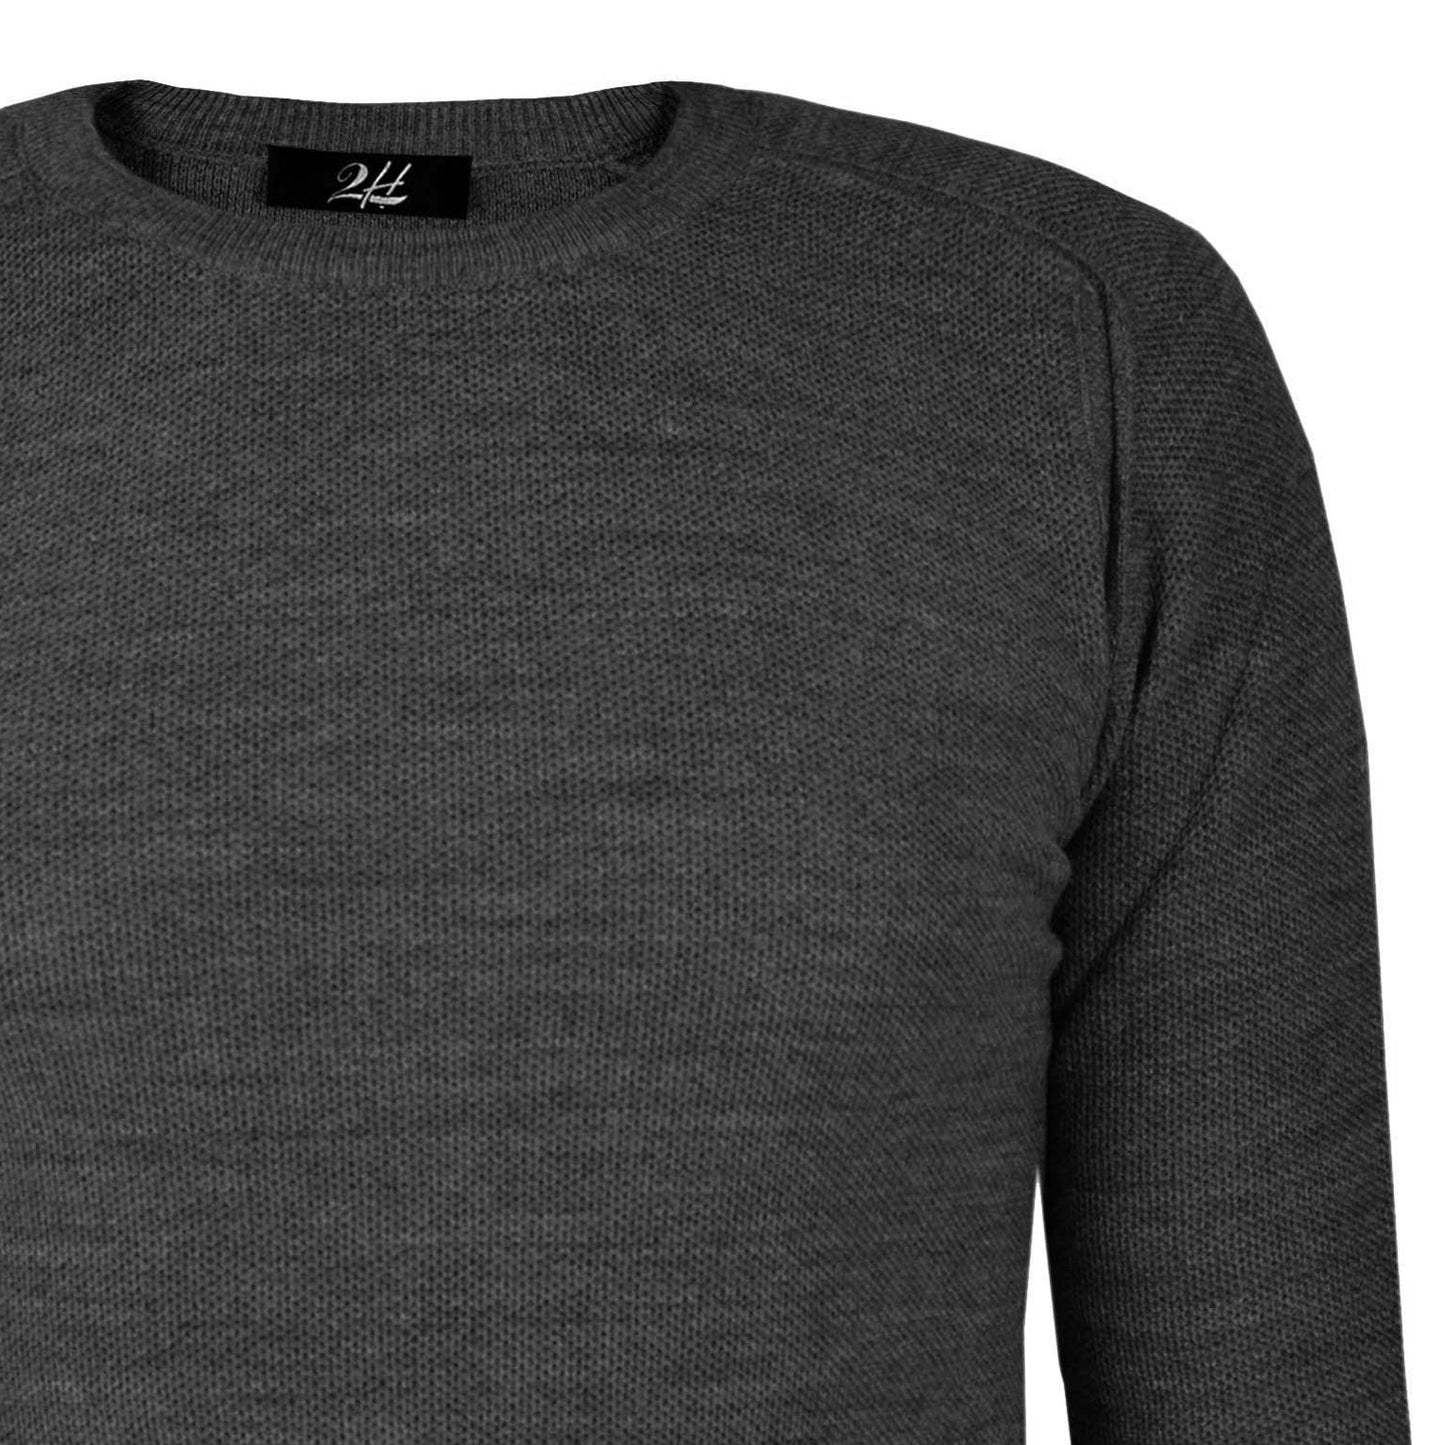 2H Dark Grey Knitted Round Neck Sweater